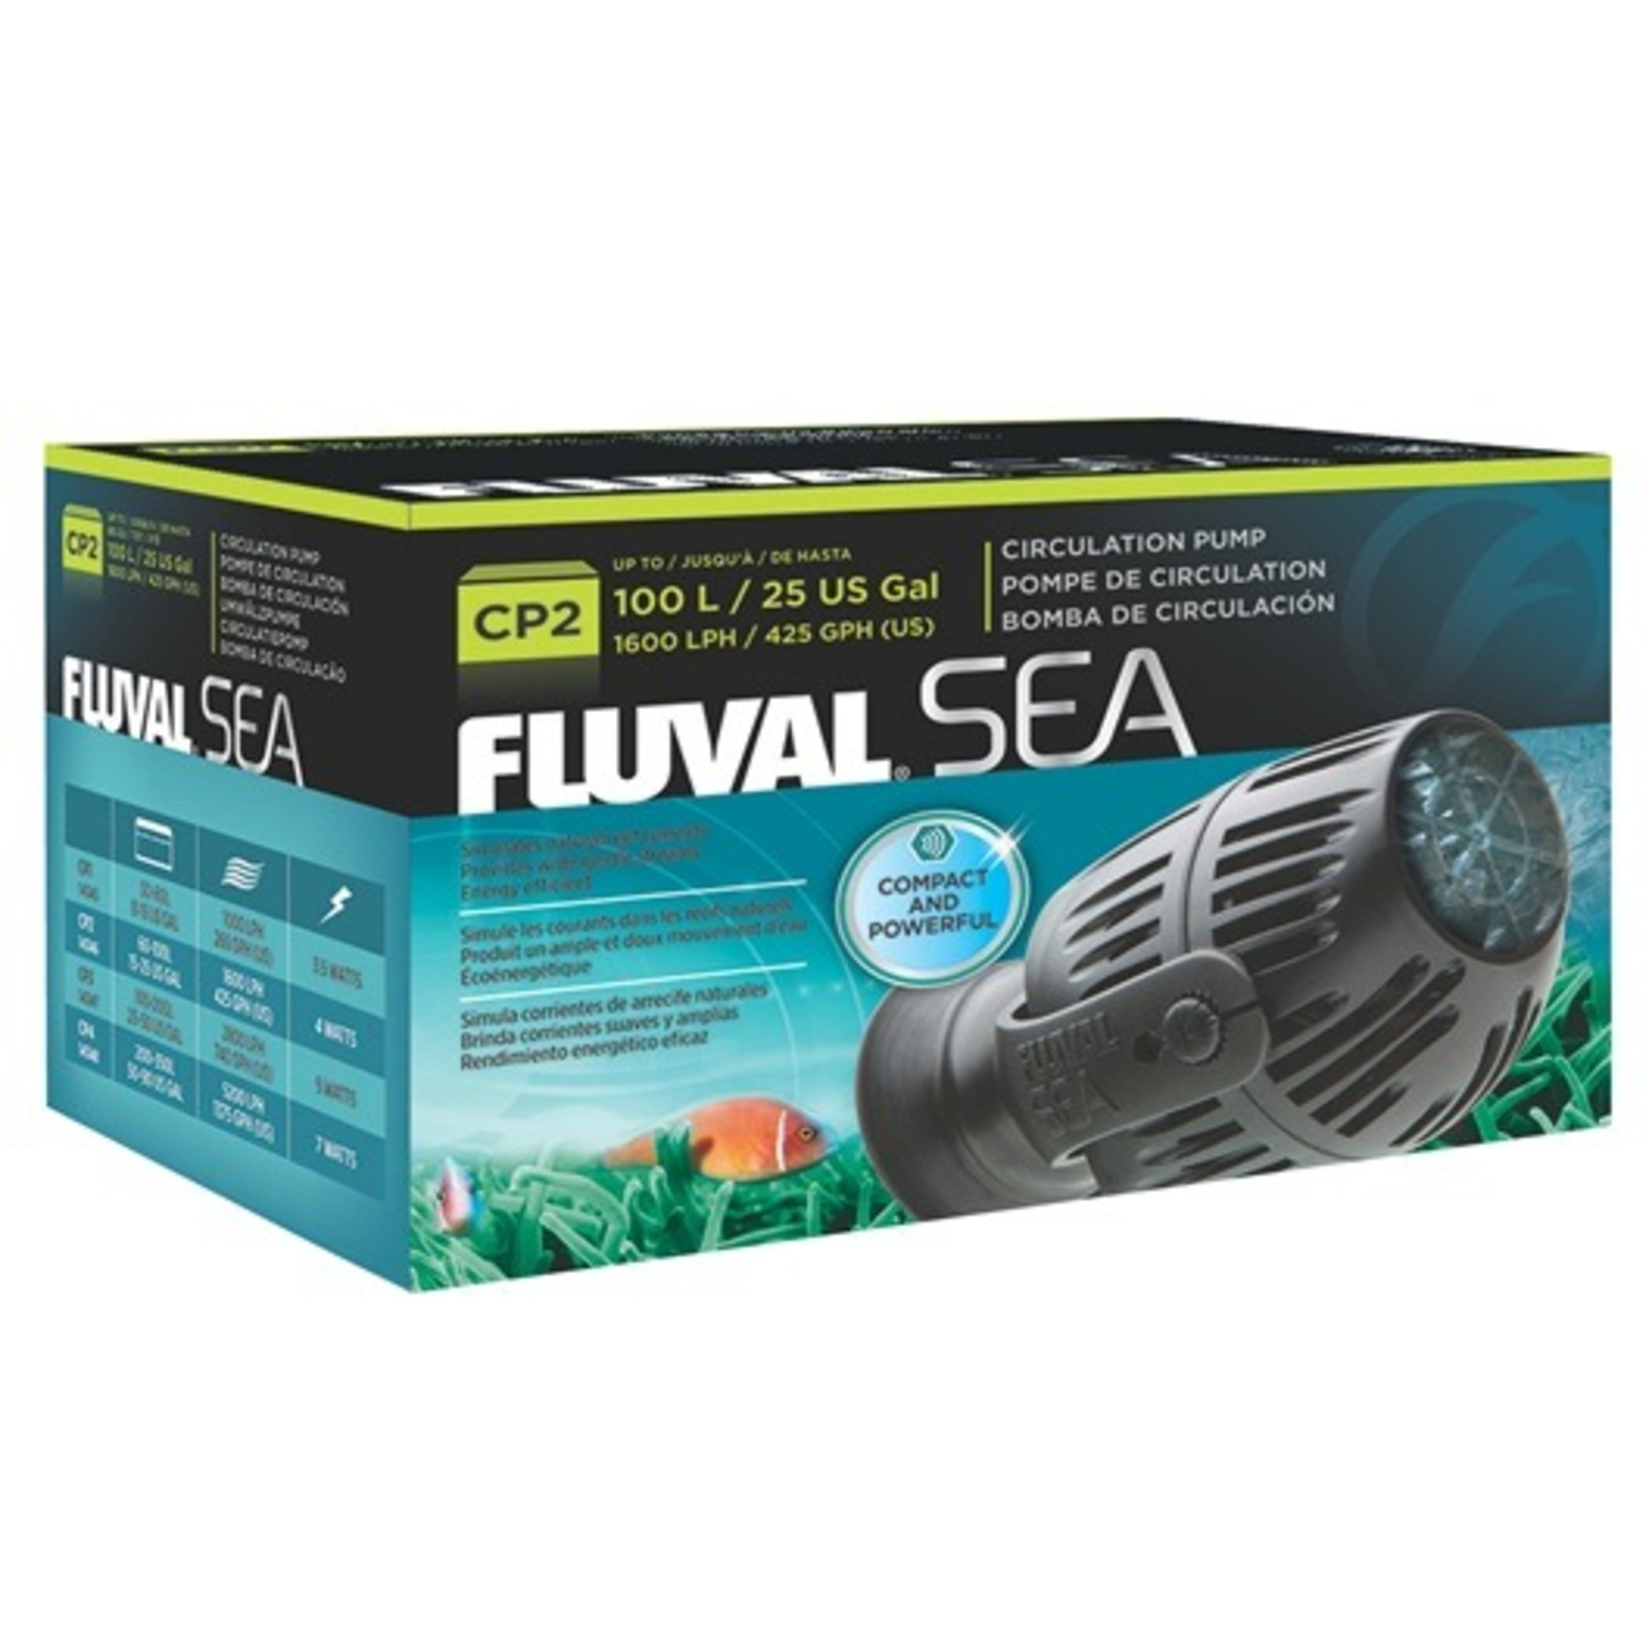 FLUVAL Fluval Sea Aquarium Circulation Pump (CP2), 4W, 1600 LPH (425 GPH)